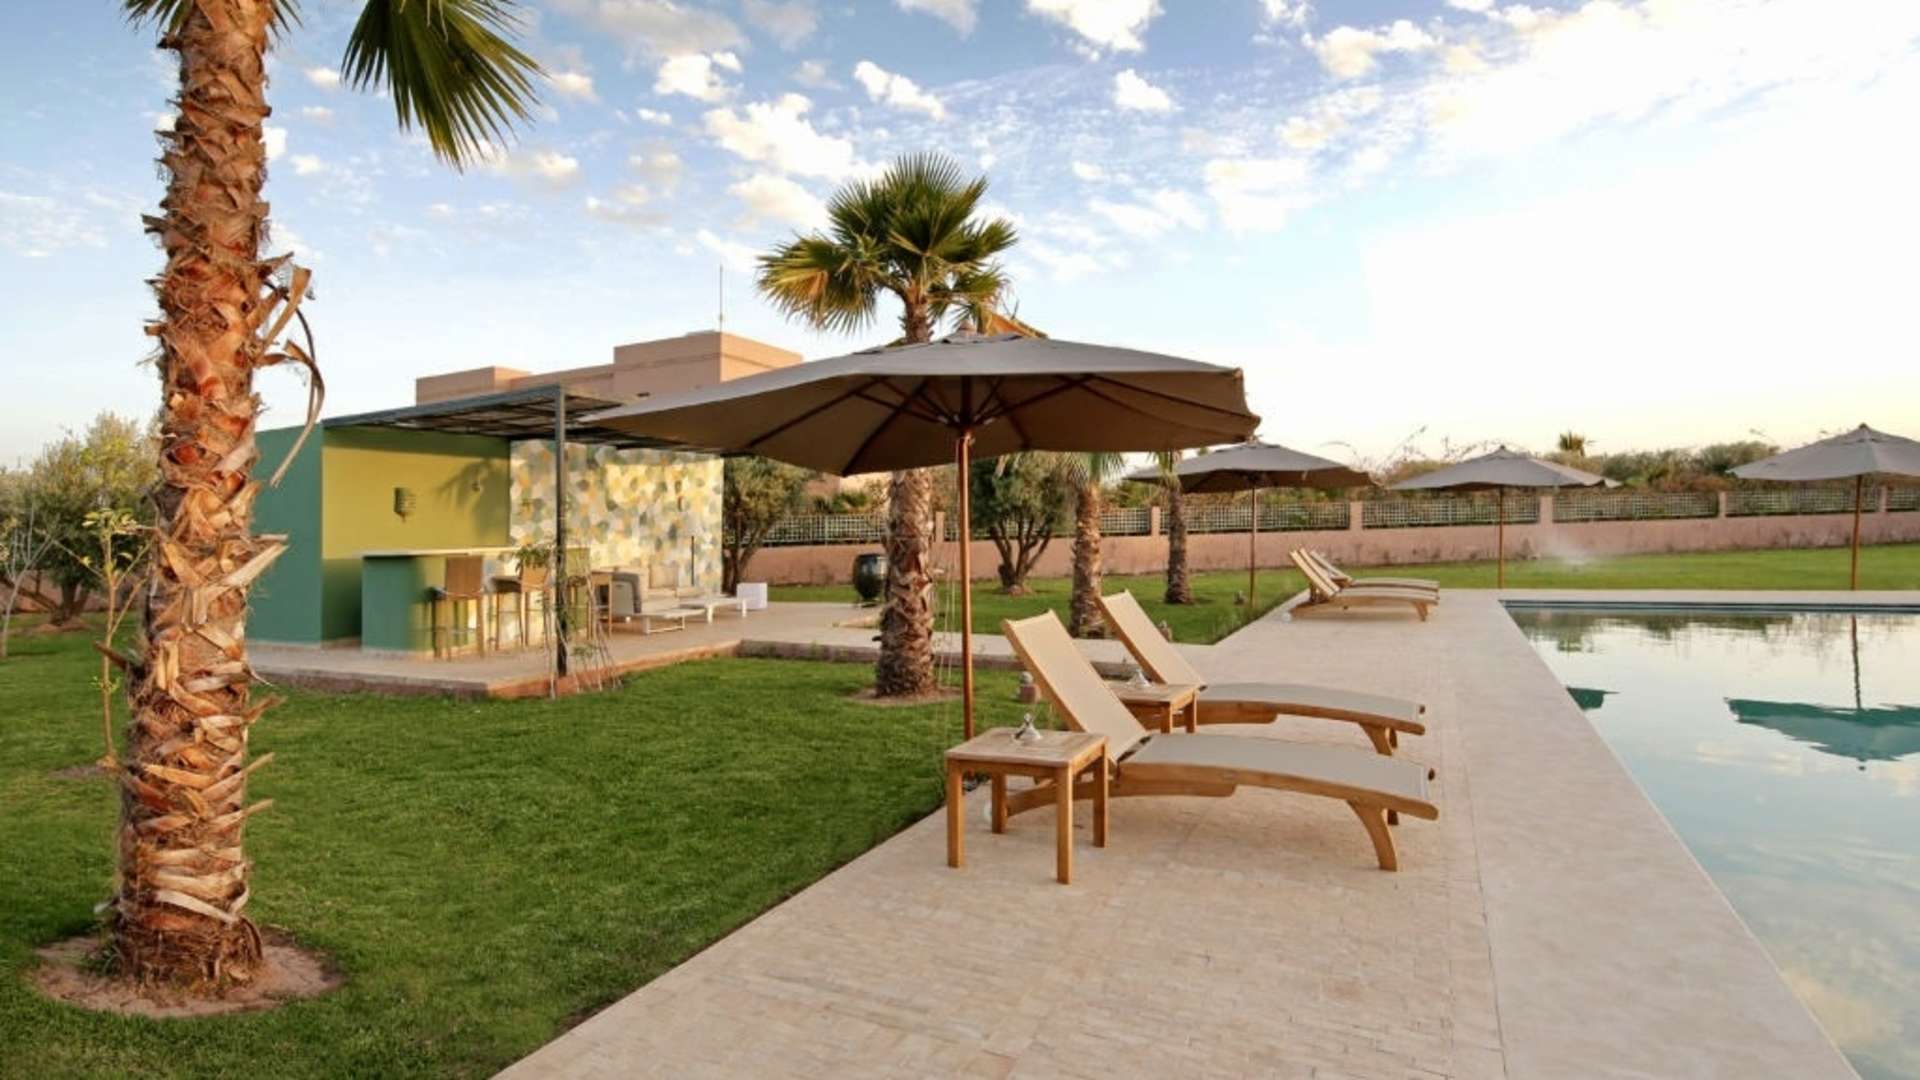 Location de vacances,Villa,Villa Privée de 5 suites sur un jardin de 4500M2 Route de Fès, Marrakech,Marrakech,Route de Fès